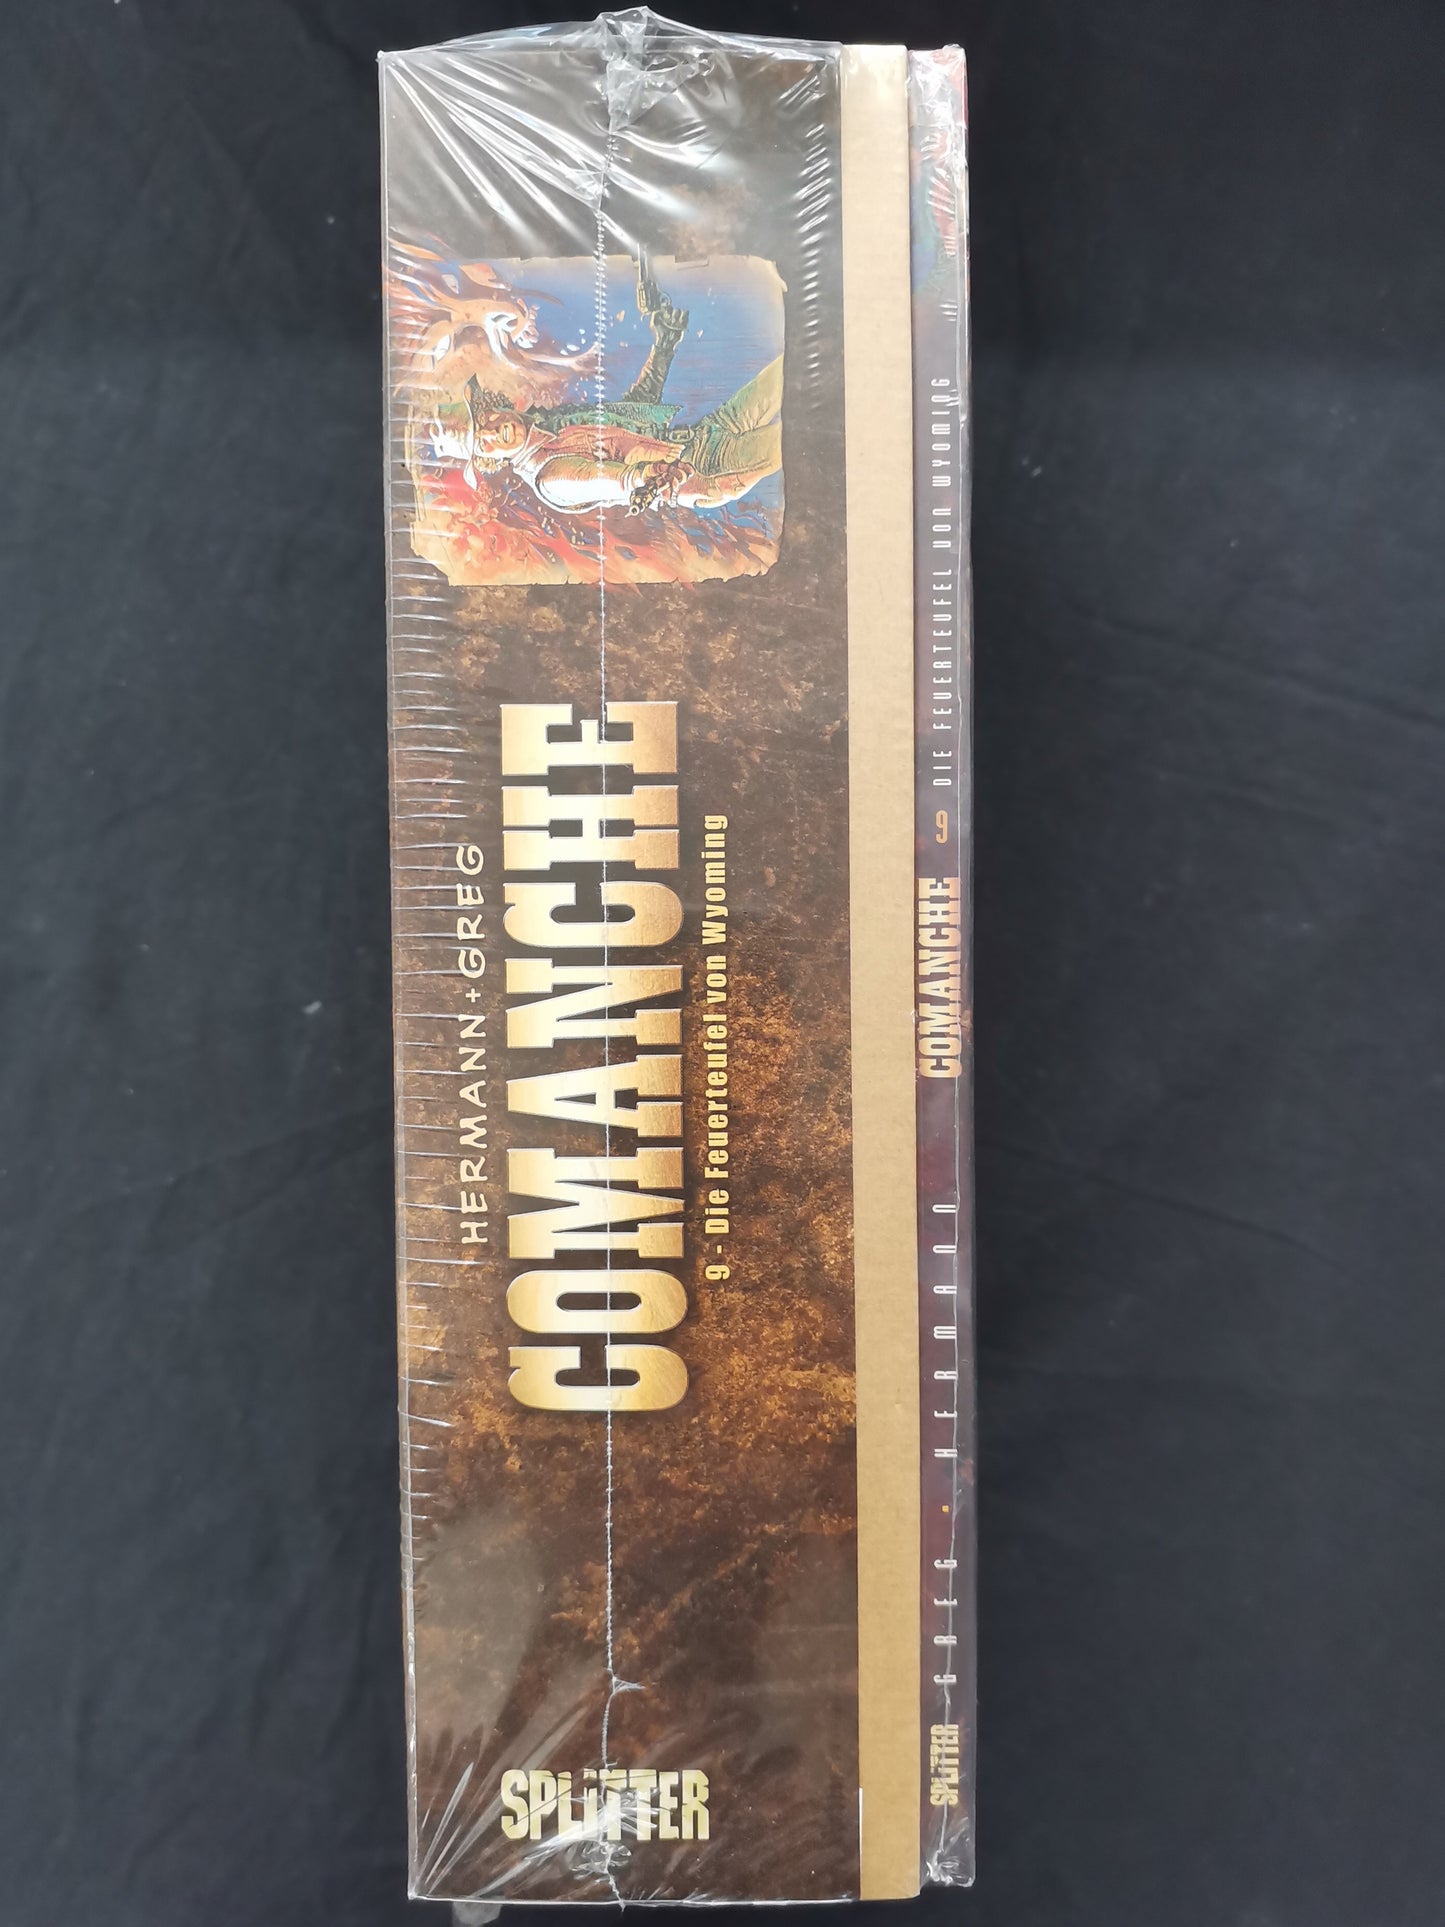 Comanche 9 Special Edition